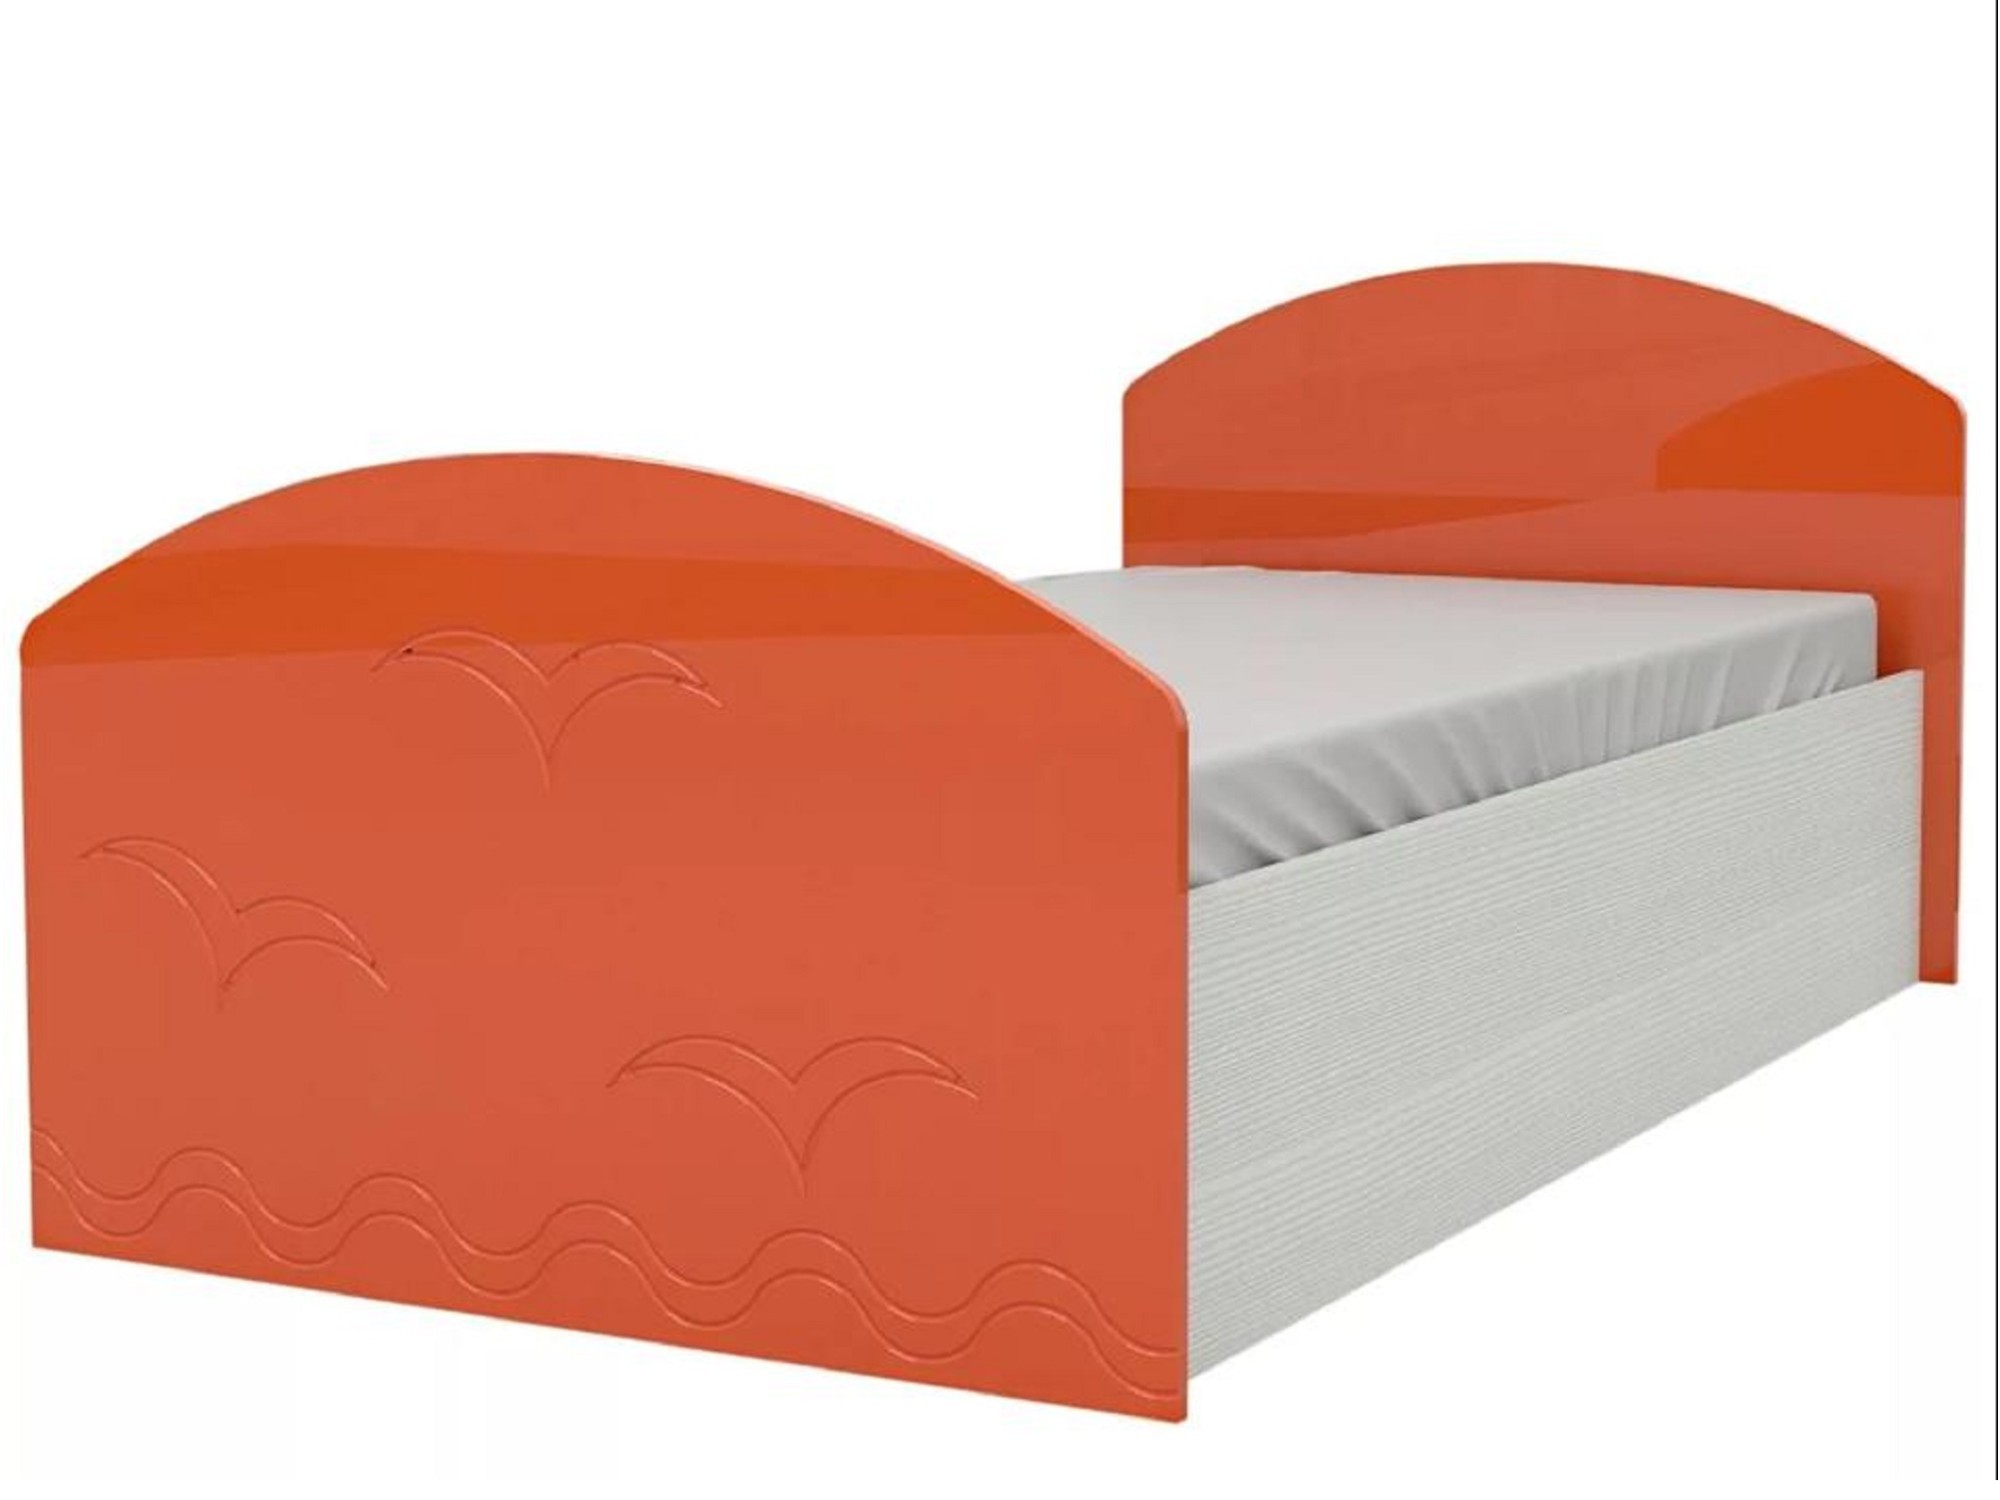 Юниор-2 Детская кровать 80, металлик (Оранжевый металлик, Дуб белёный) Дуб белёный, МДФ, ЛДСП юниор 2 детская кровать 80 металлик розовый металлик дуб белёный дуб белёный мдф лдсп